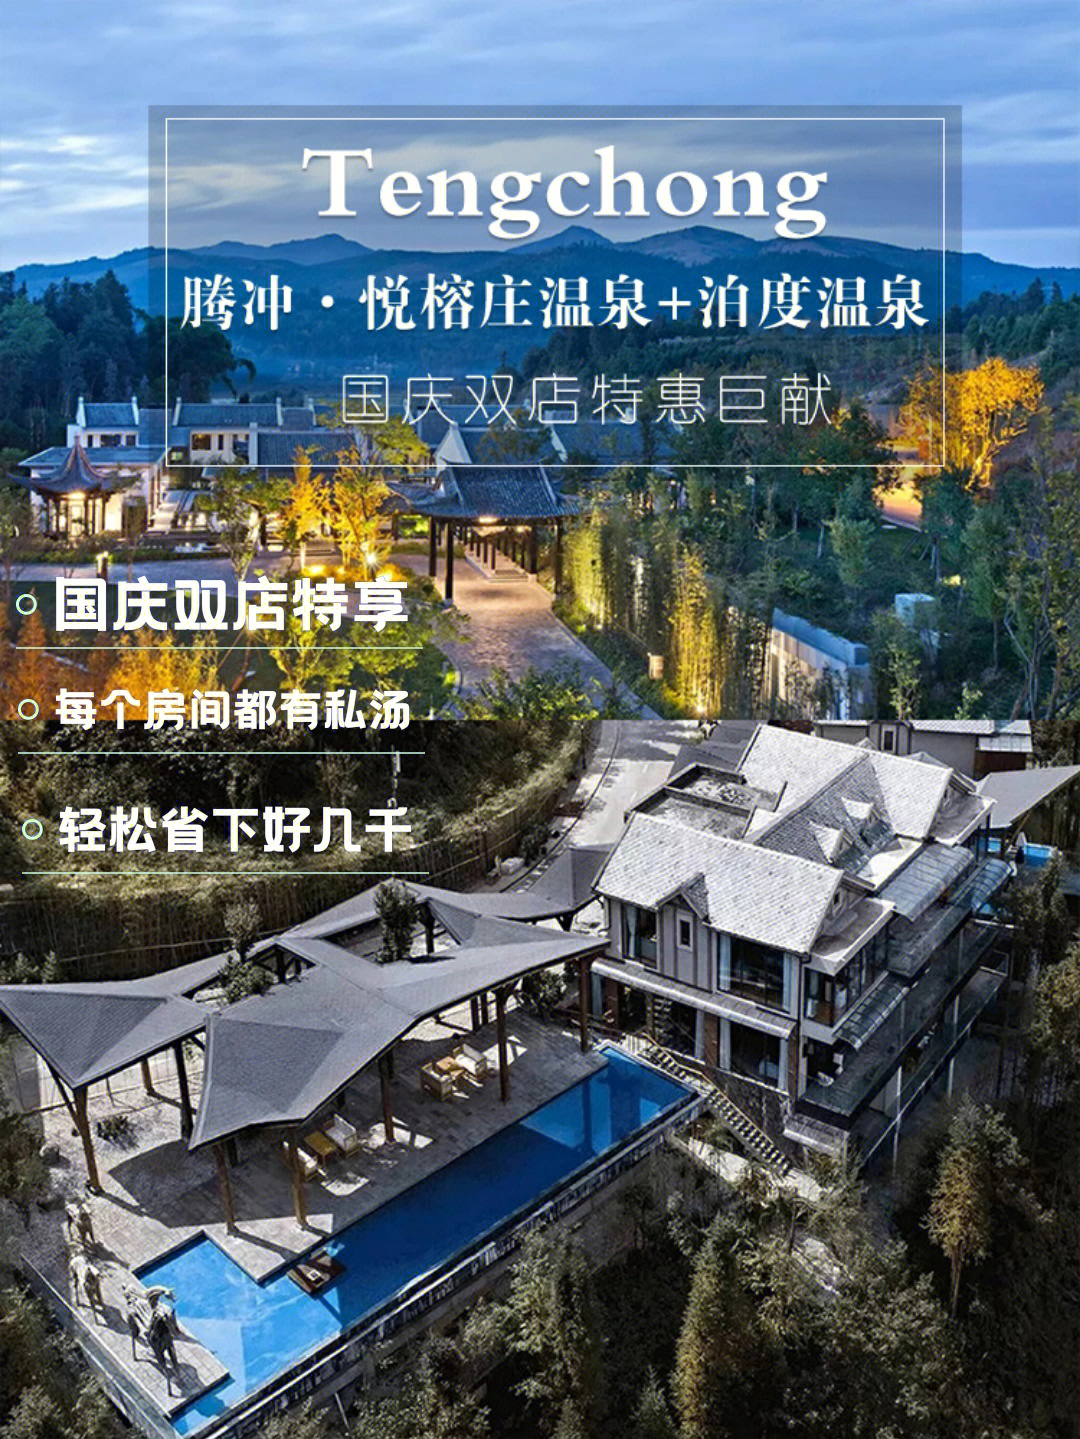 腾冲永乐温泉酒店电话图片